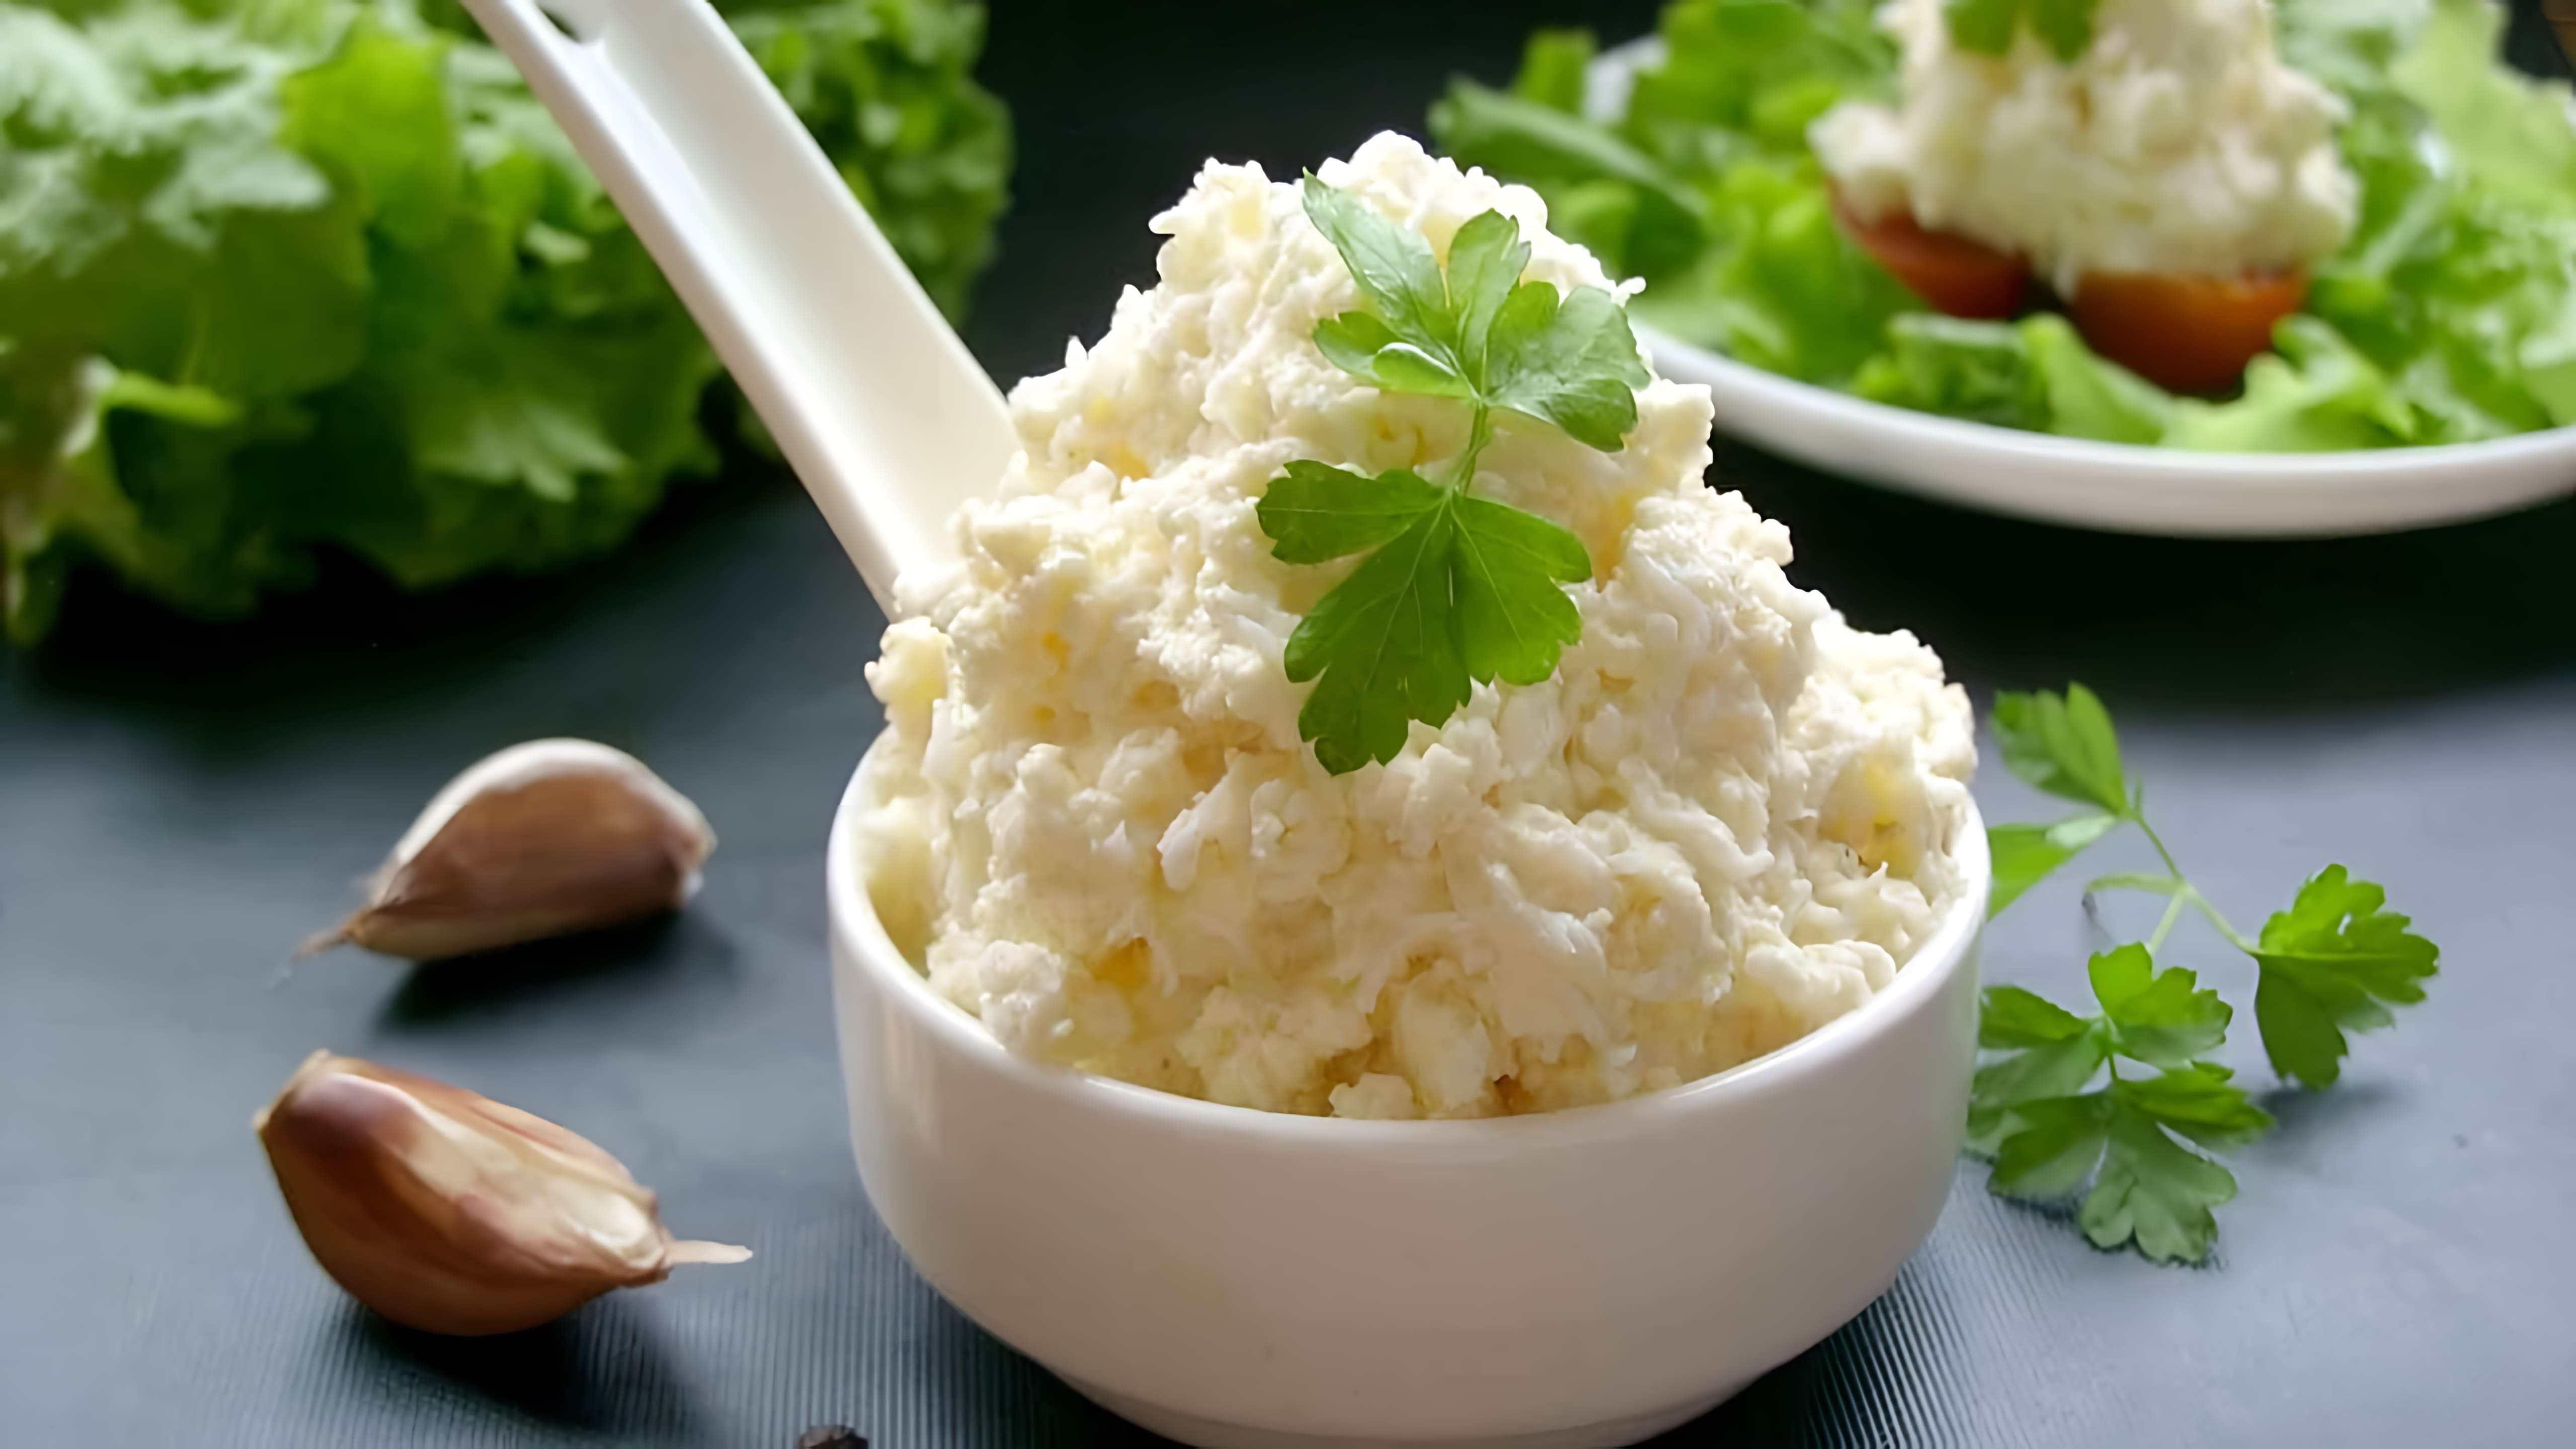 Салат с яйцом, плавленным сыром и чесноком - это быстрый и вкусный рецепт, который можно приготовить за несколько минут